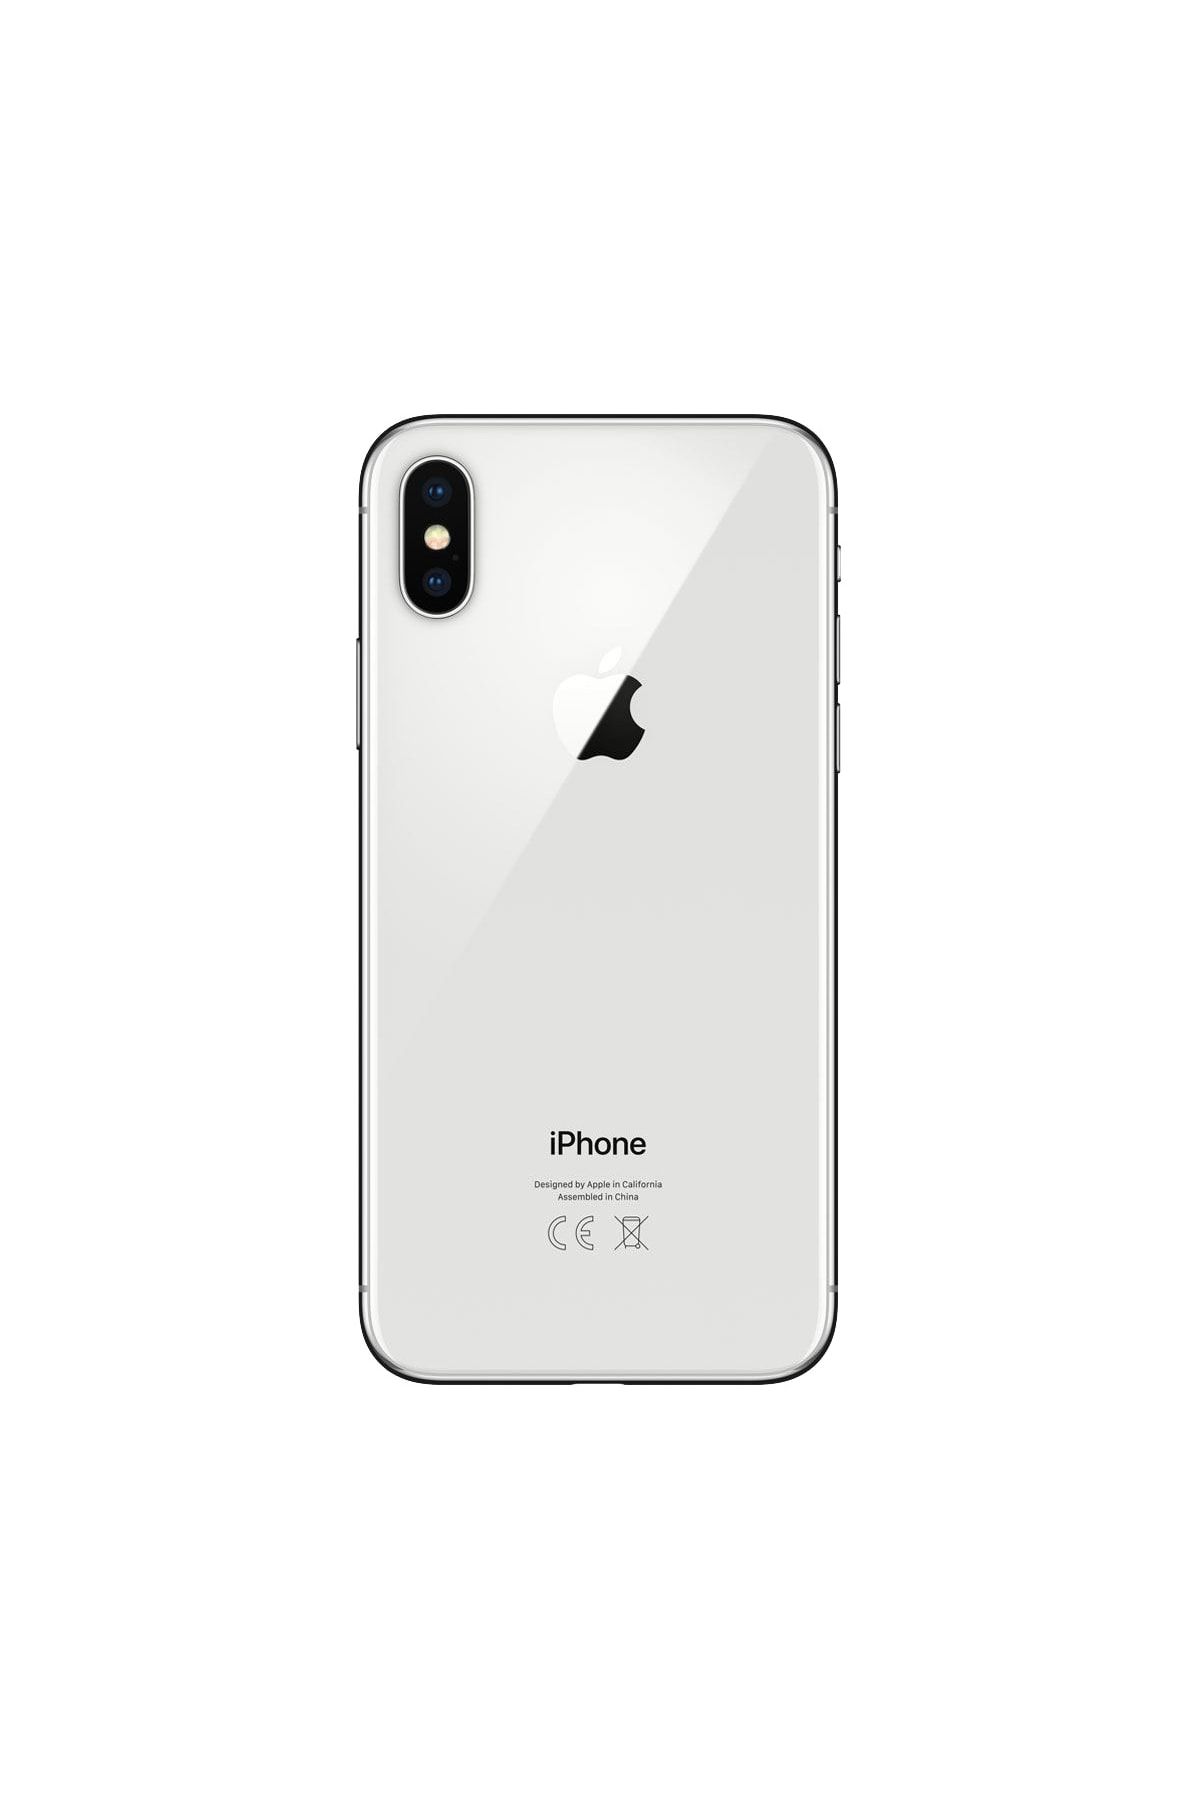 Apple Yenilenmiş iPhone X 64 GB Gümüş Cep Telefonu (12 Ay Garantili) - C Kalite